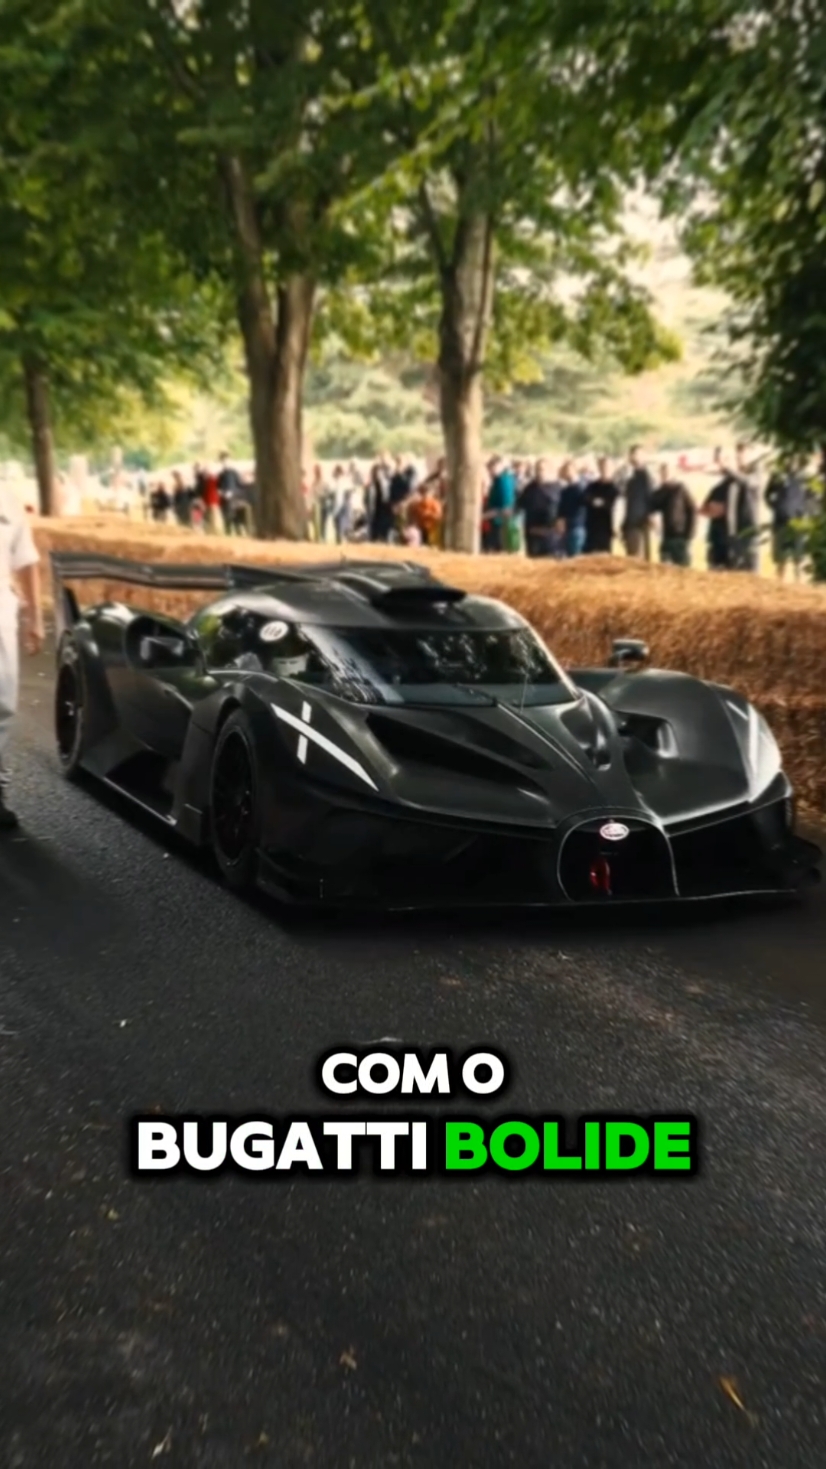 O carro mais lindo do mundo🚦#carros #hypercarros #supercarros #bugatti #bugattibolide #fyp 